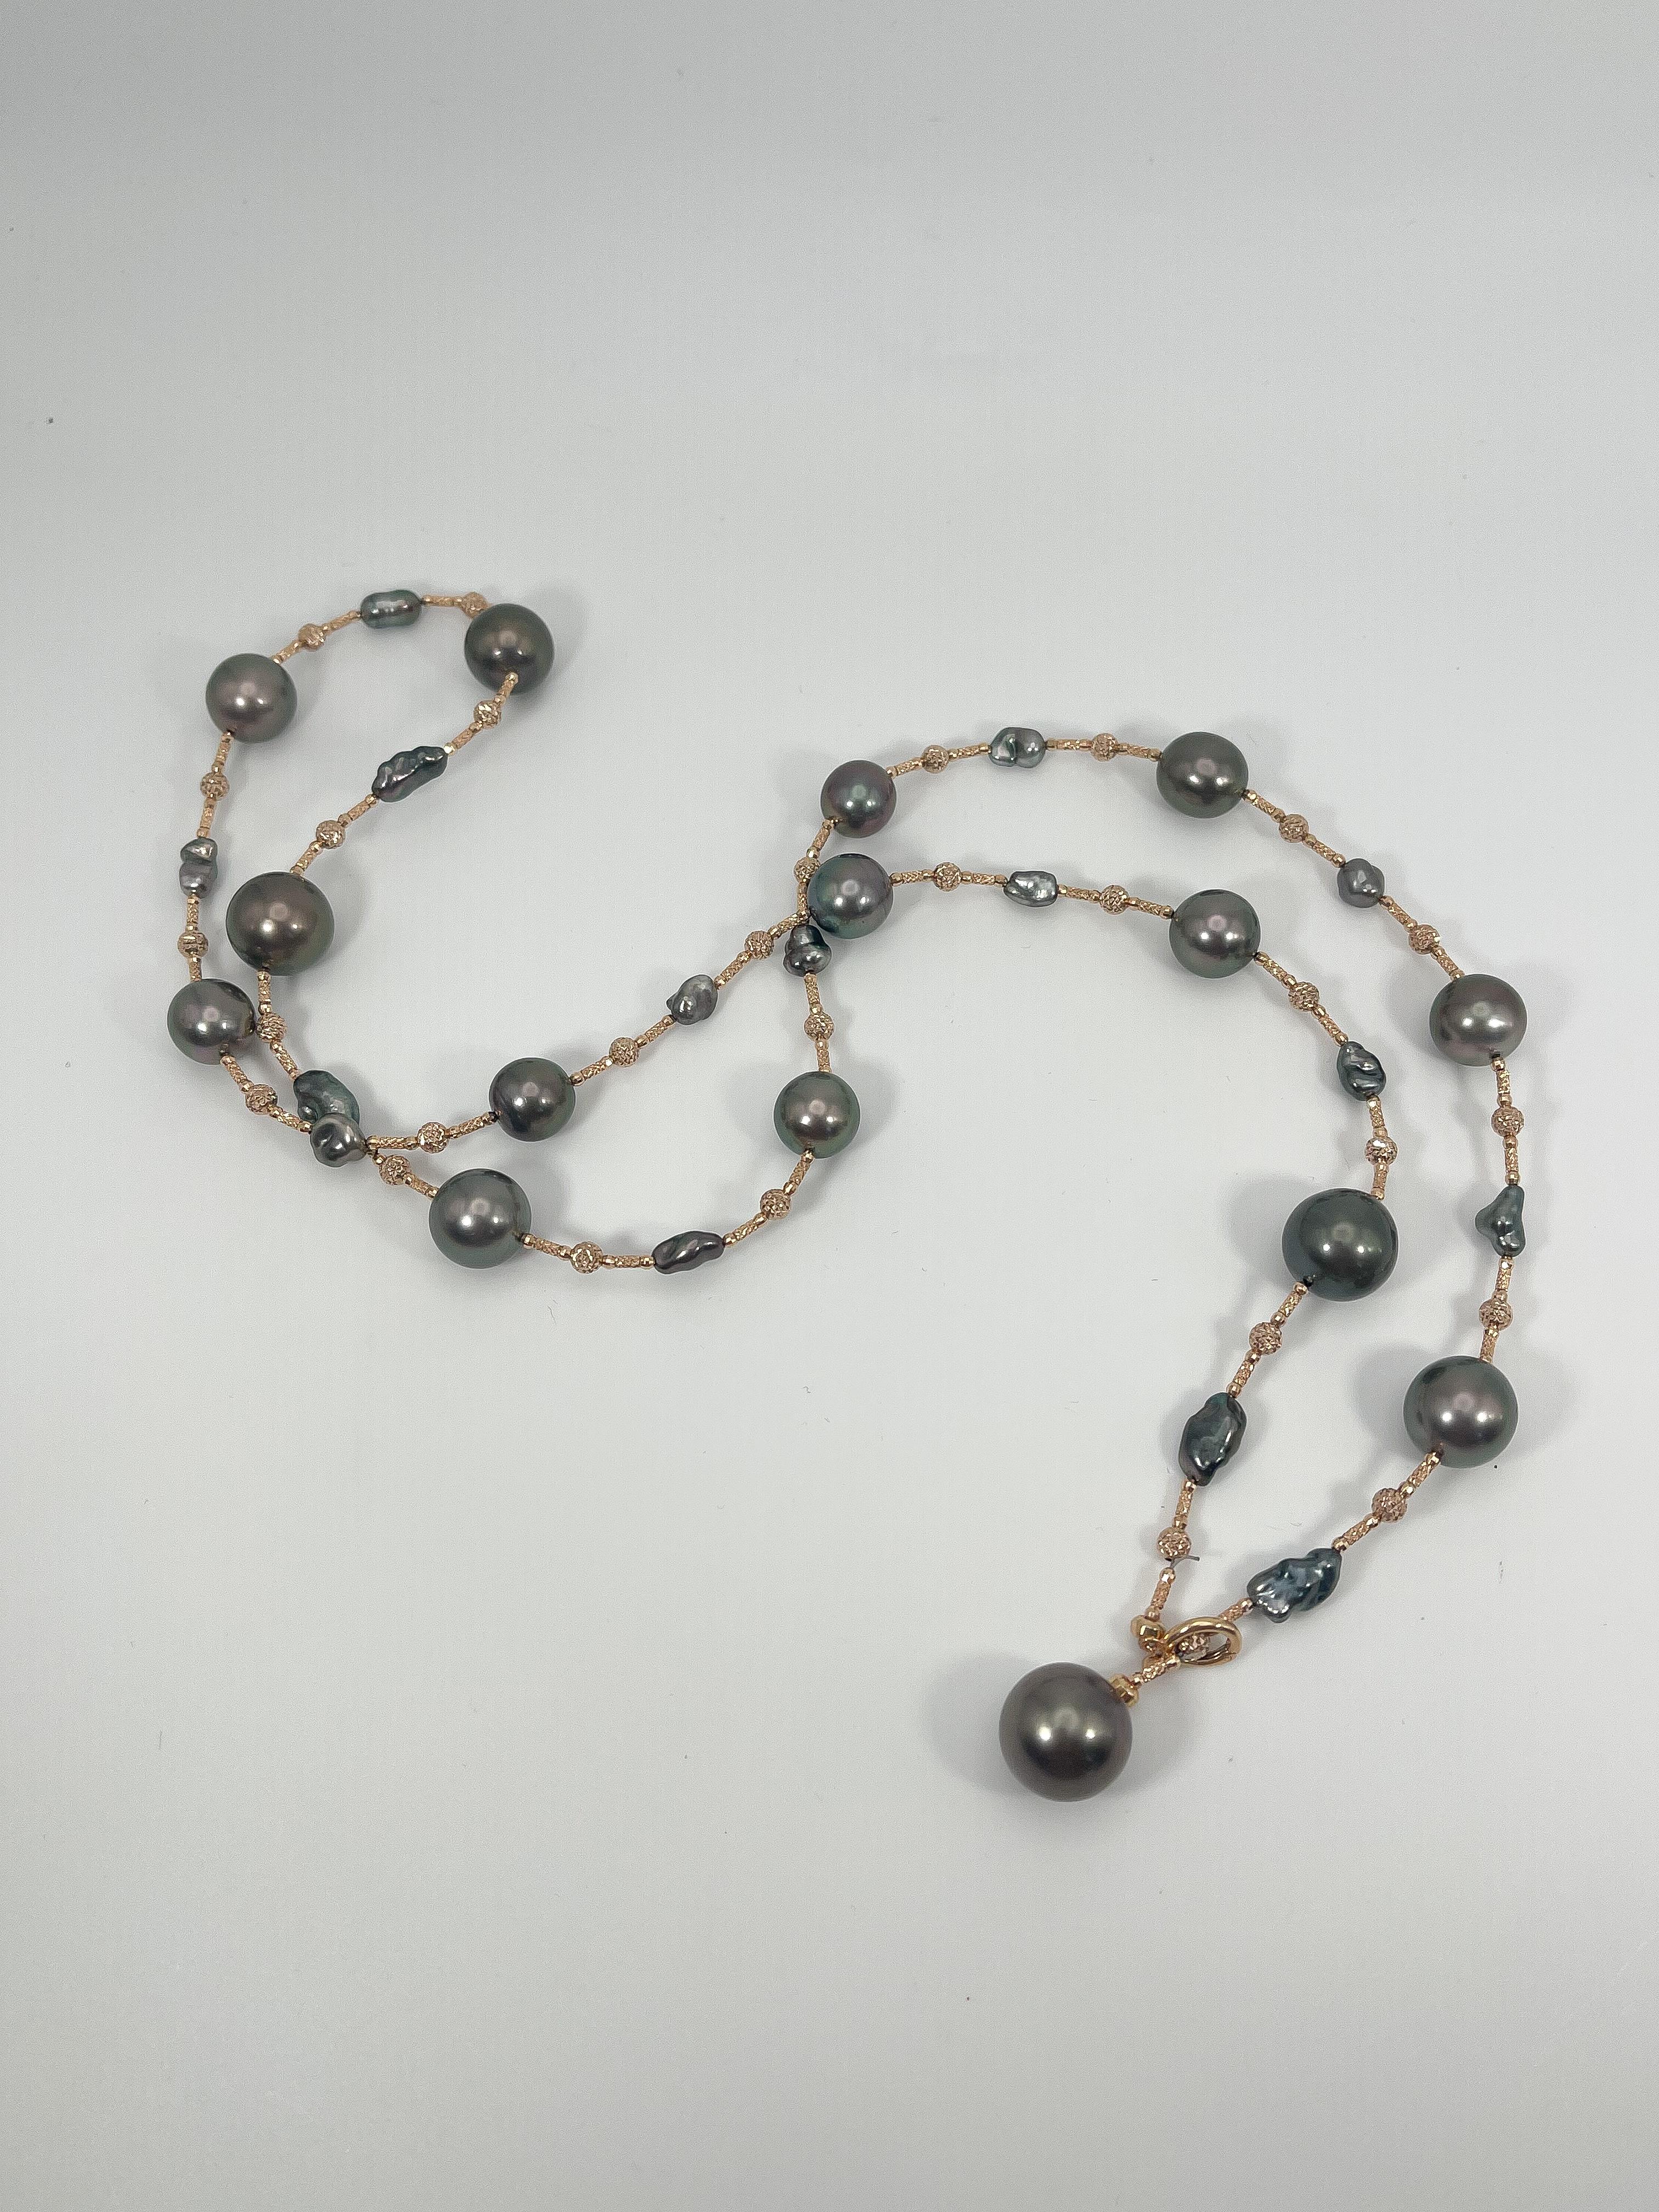 18K Rose Gold Südsee Tahiti-Perlen Halskette. Die Perlen sind 11mm, hat eine Perlenschließe zum Schließen der Kette, die Kette ist 32 Zoll lang, kann auf 7 verschiedene Arten getragen werden, hat ein Gesamtgewicht von 53,3 Gramm.